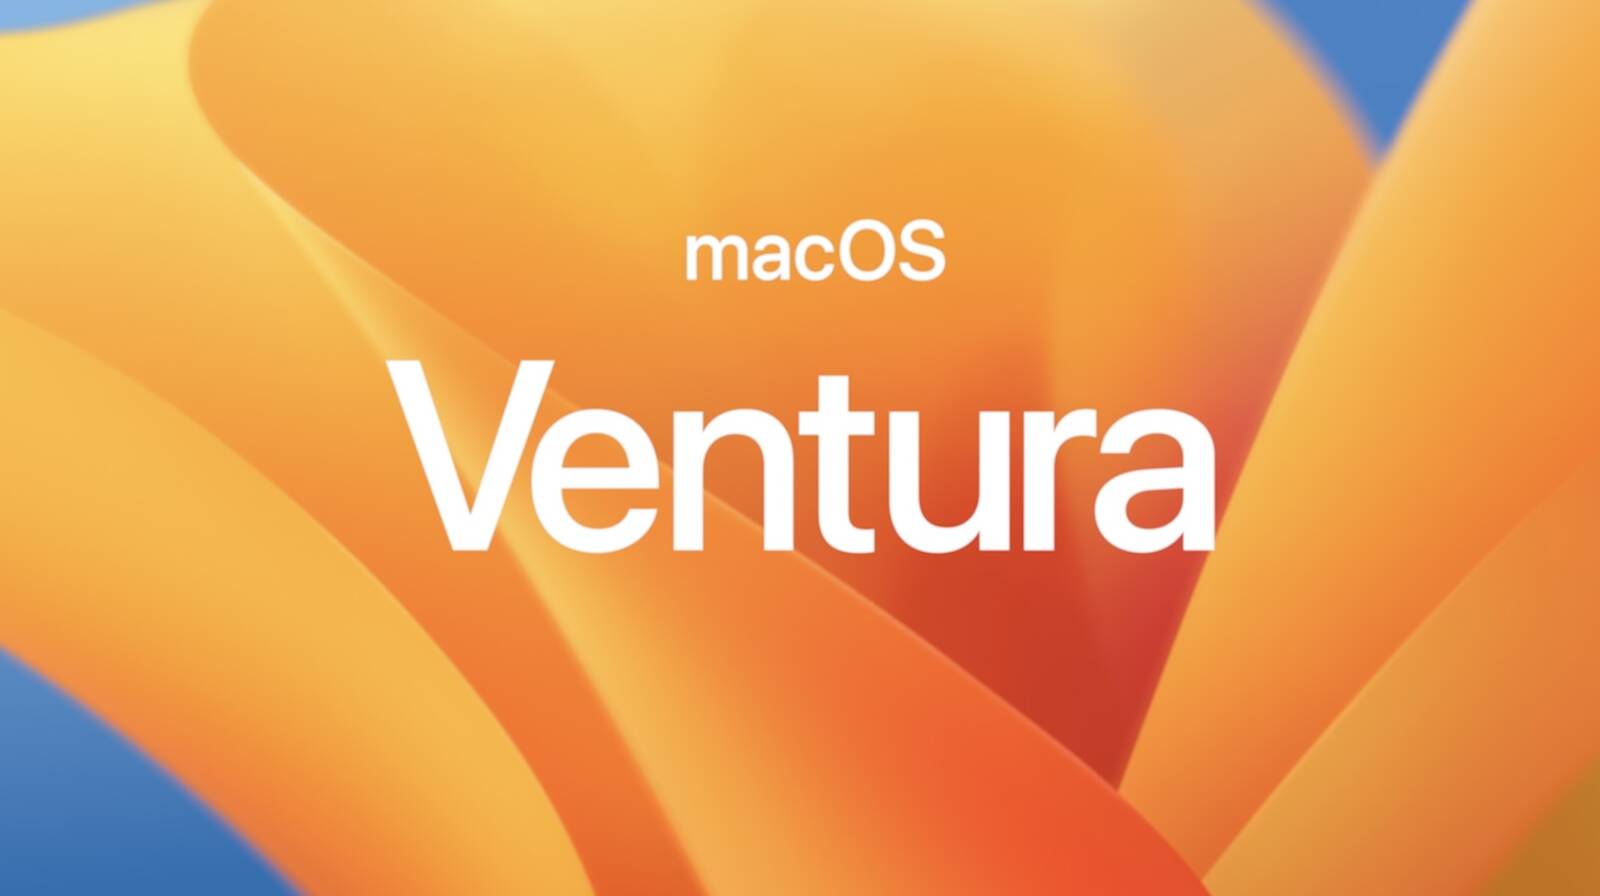 ｢macOS Ventura 13.2｣でパイオニア製Blu-rayドライブが認識されなくなる問題が発生中